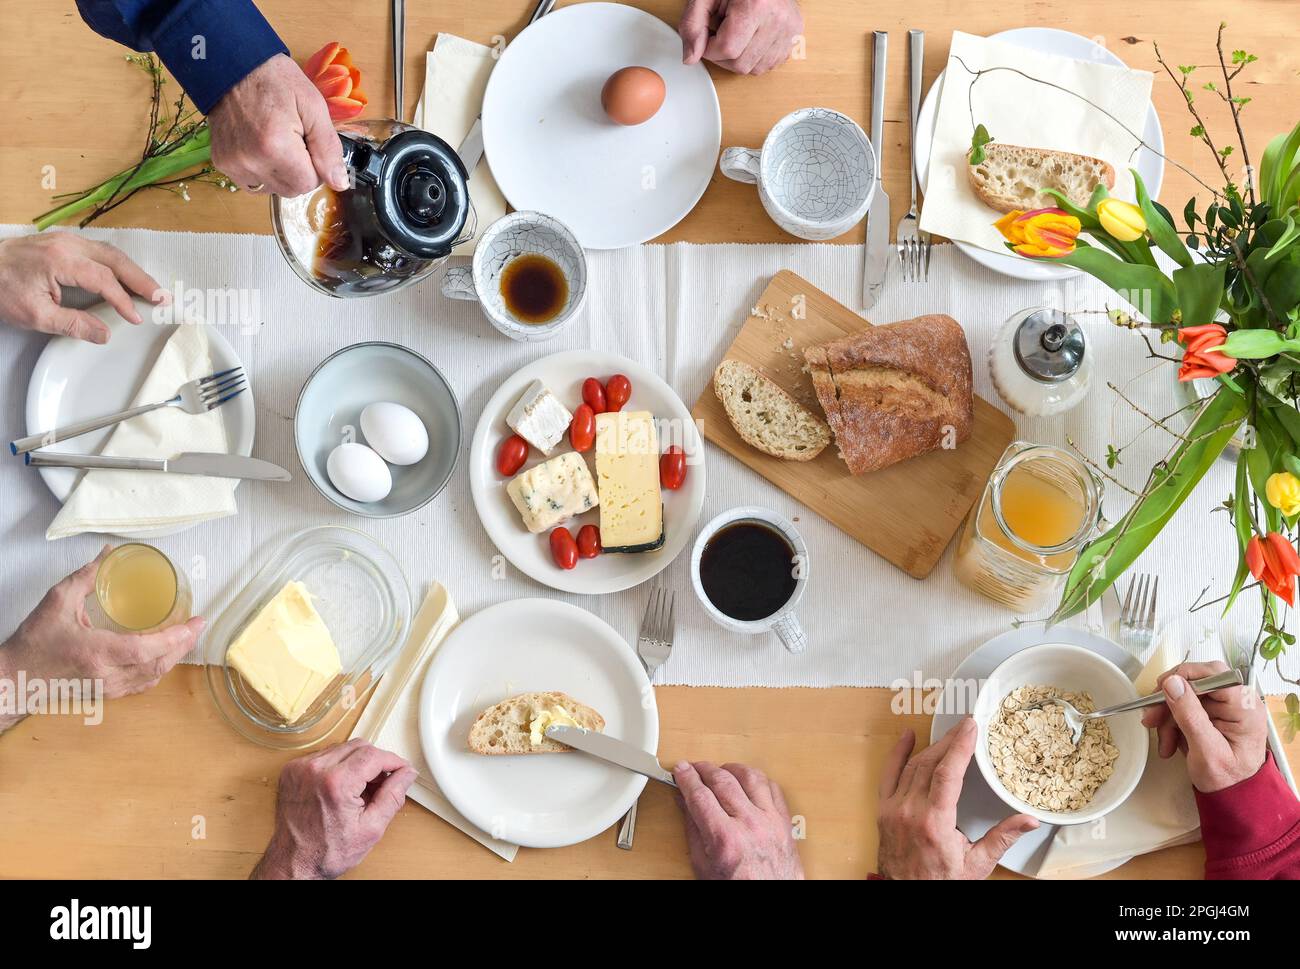 Groupe de personnes prenant le petit déjeuner ensemble sur une table en bois avec du pain, des œufs au fromage et du café, vue de dessus, sélection Banque D'Images